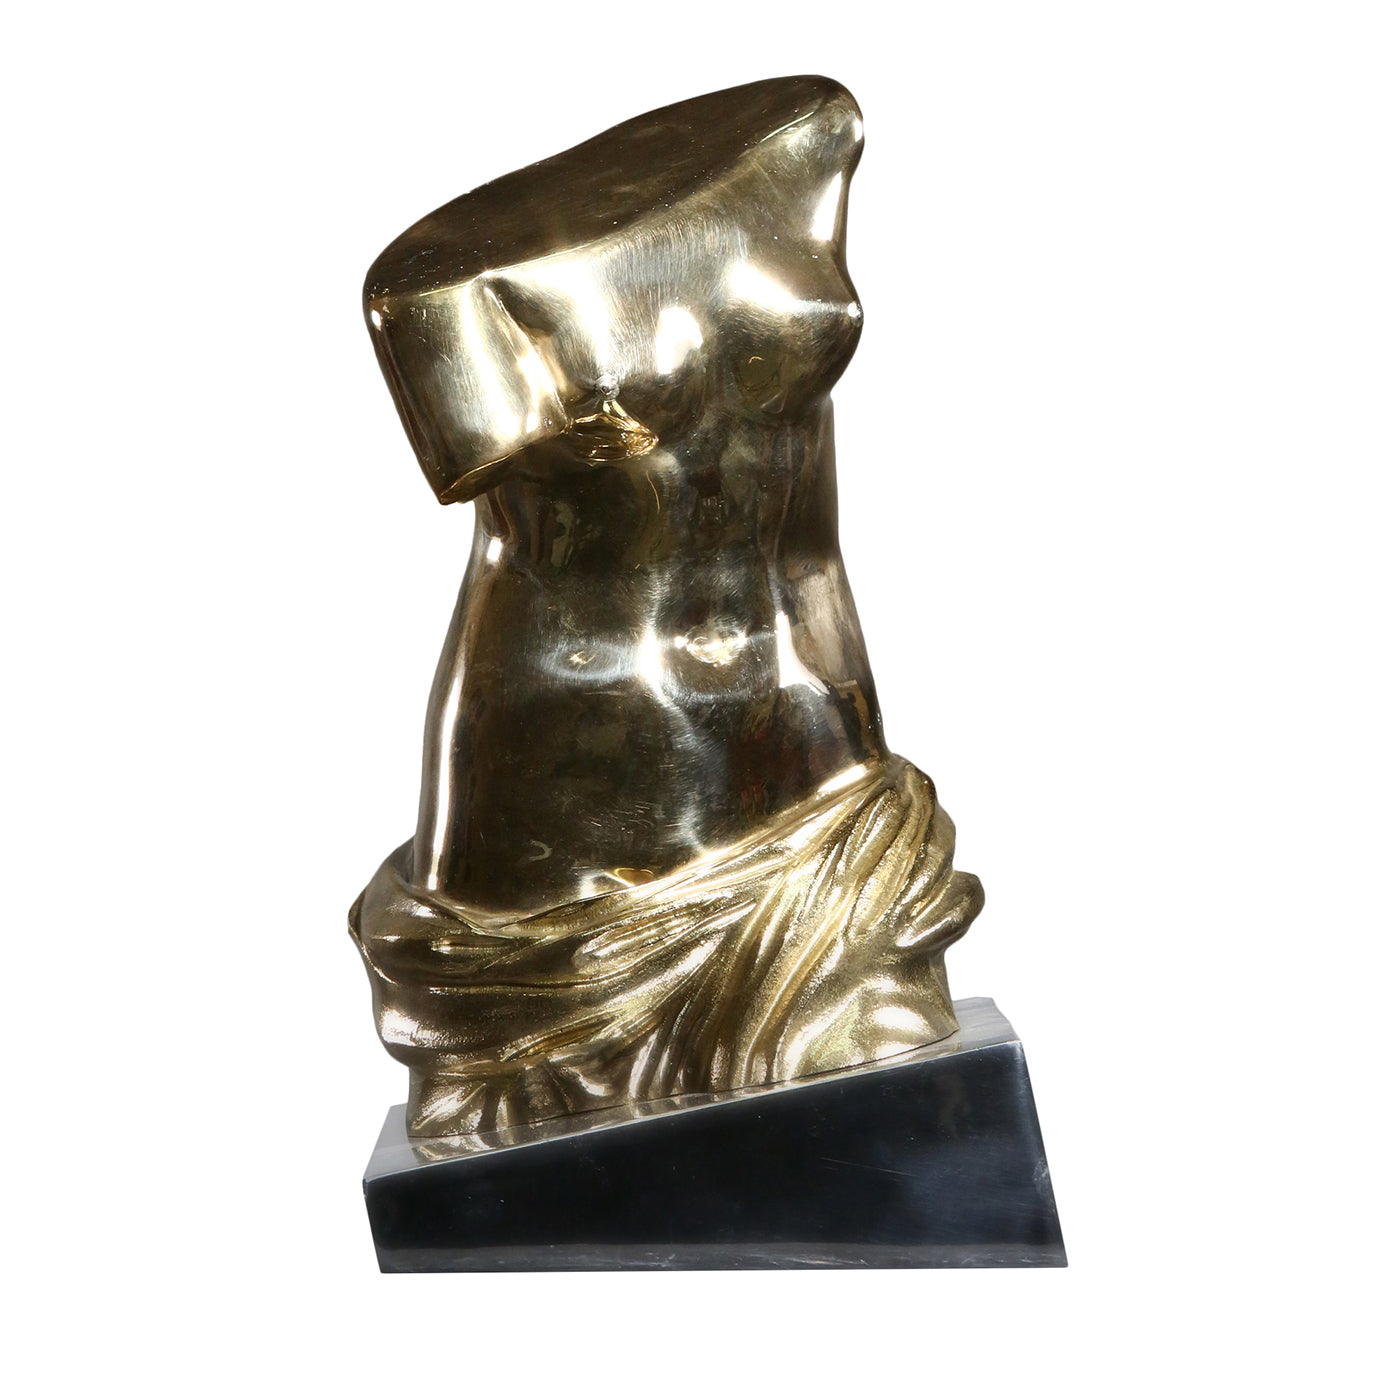 Dorso Venere di Milo moderno bronze Statuette - Main view